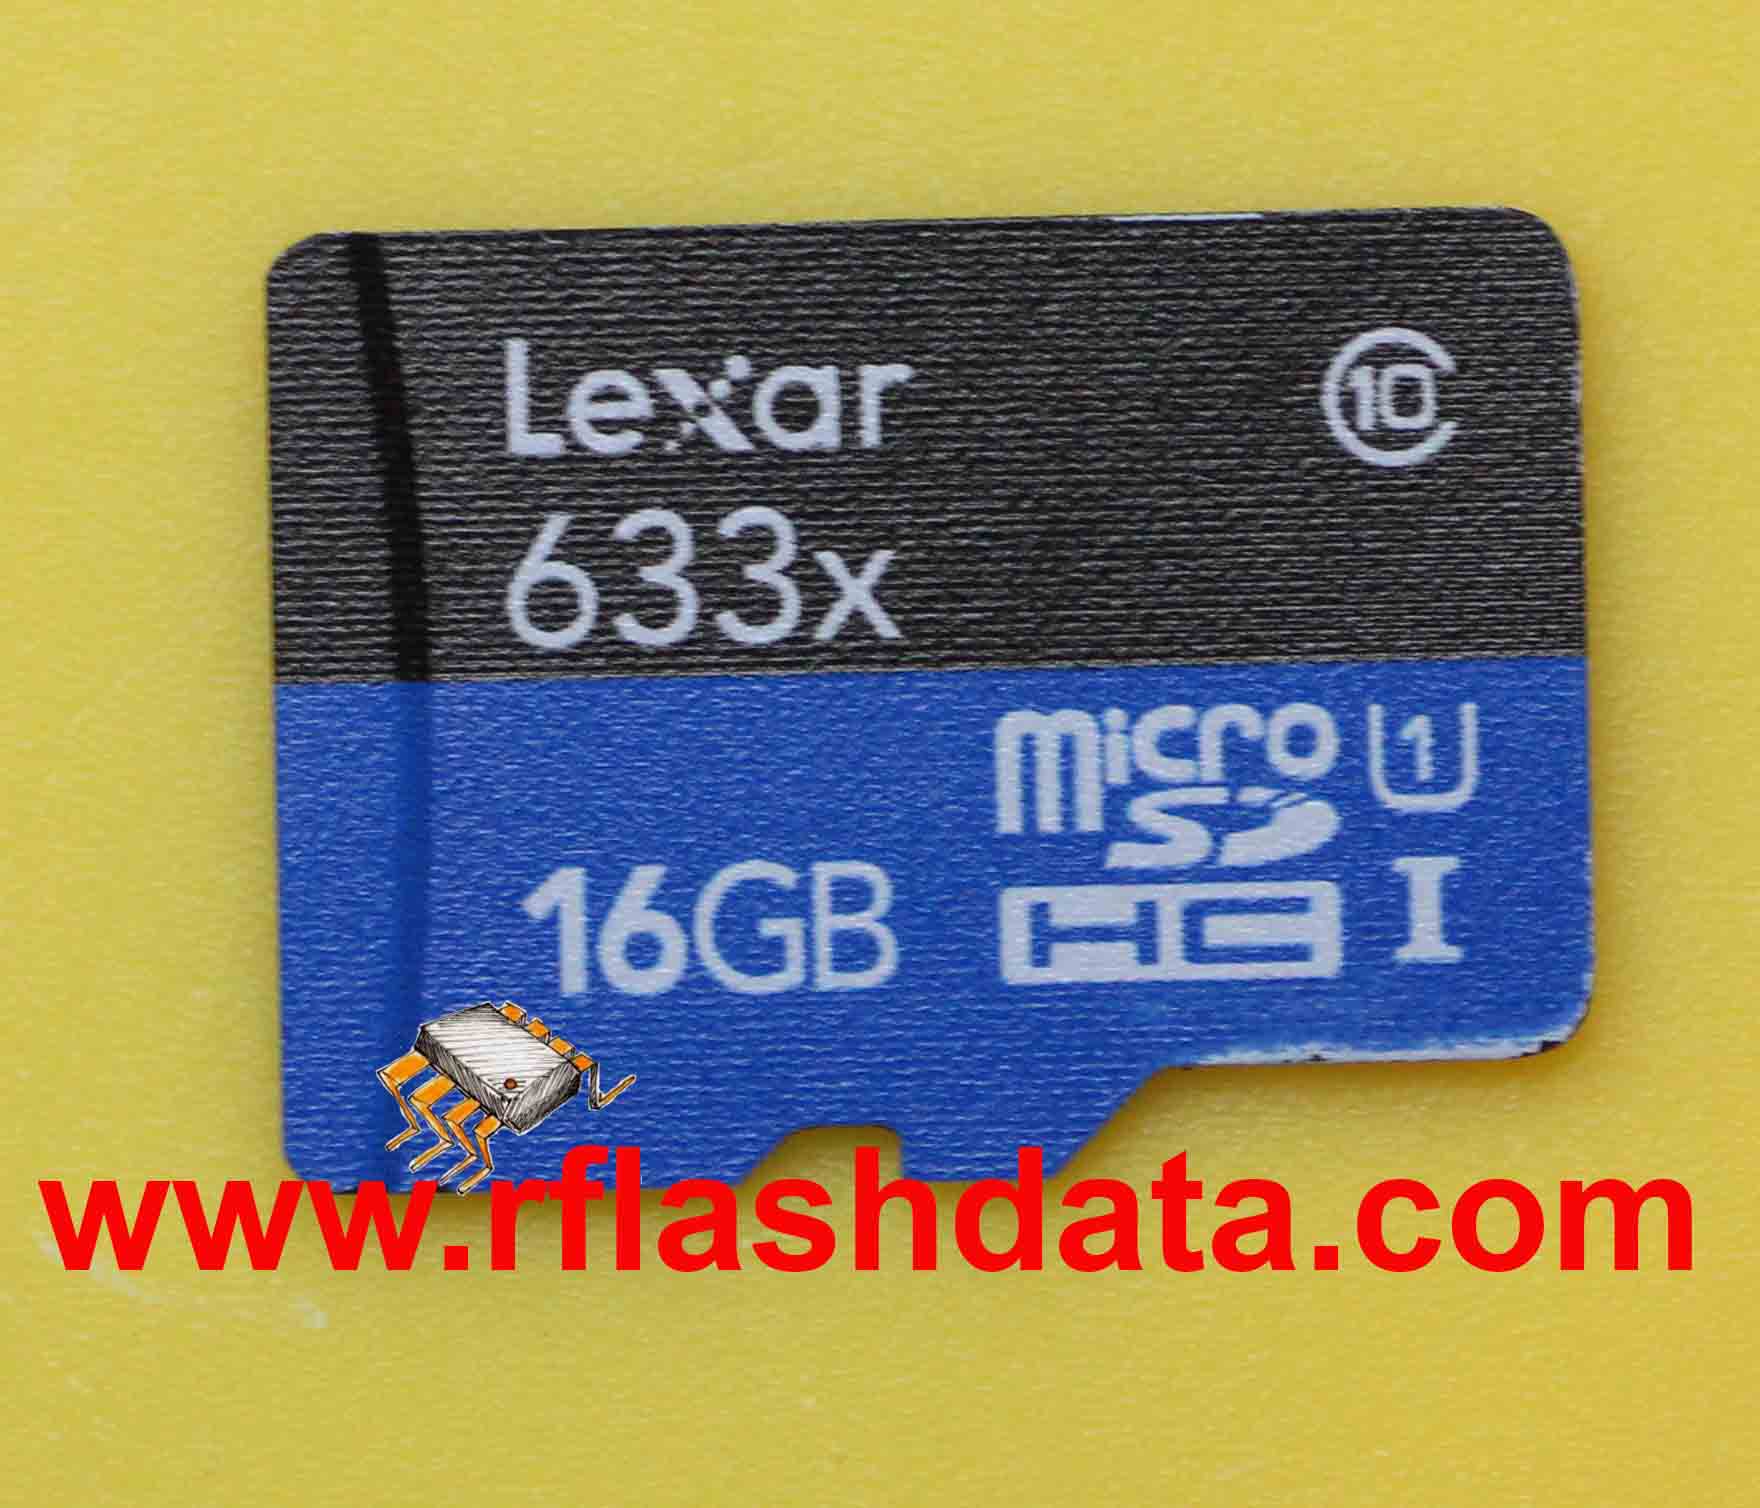 Lexar 16GB MicroSD